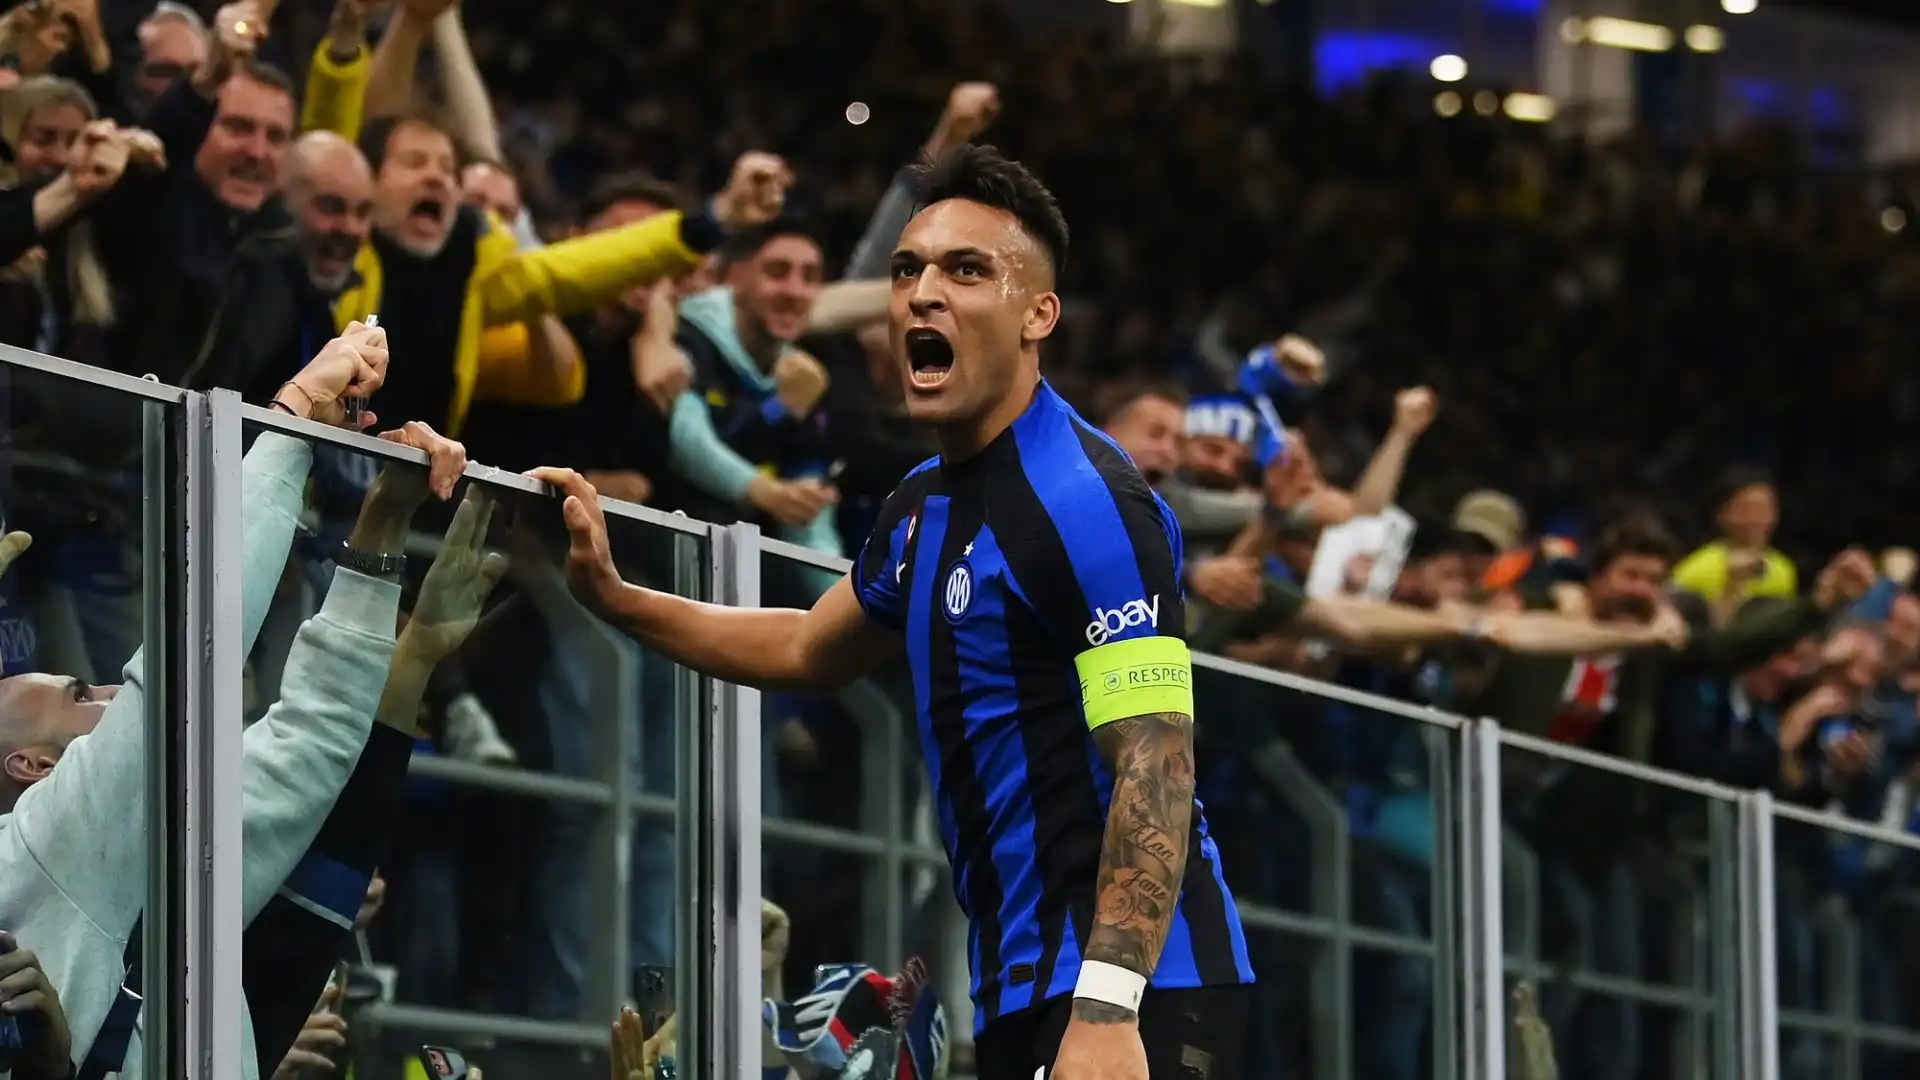 L'Inter ha battuto per 1-0 il Milan e si è qualificata per la finale di Champions League